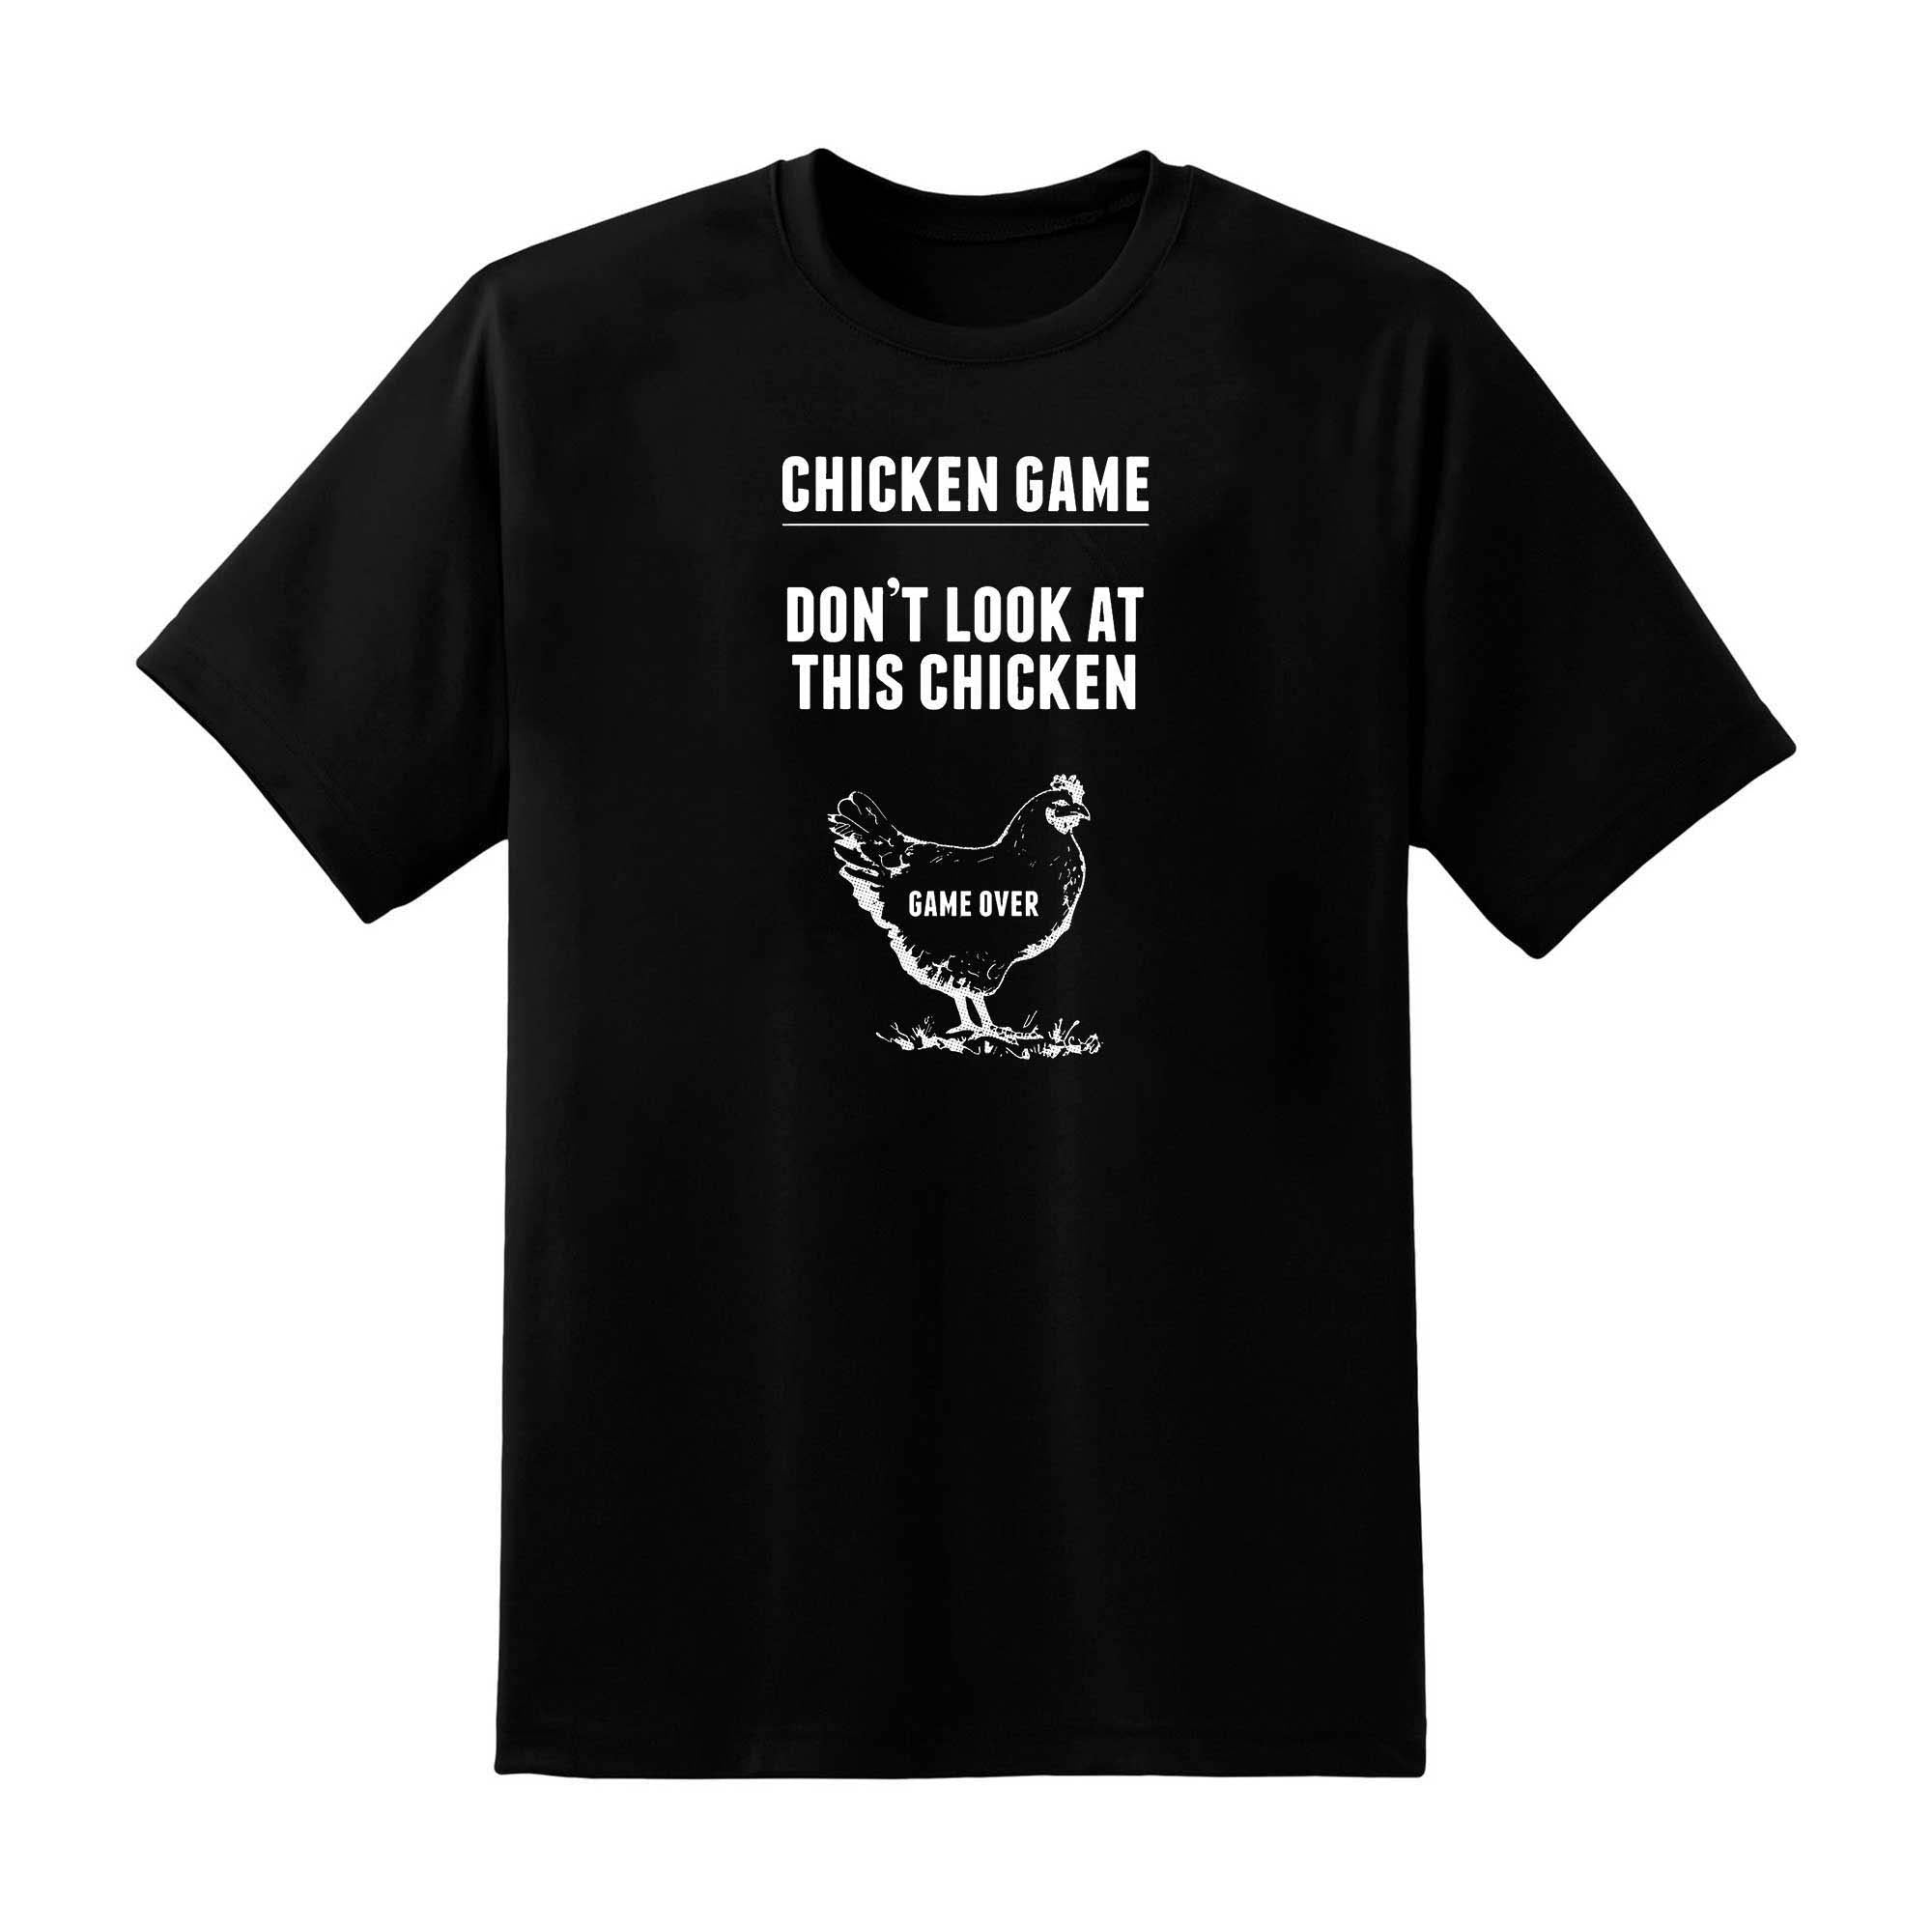 Skitongift Skitongift Chicken Game T Shirt  Funny Chicken Joke Essential T Shirt Funny Shirts